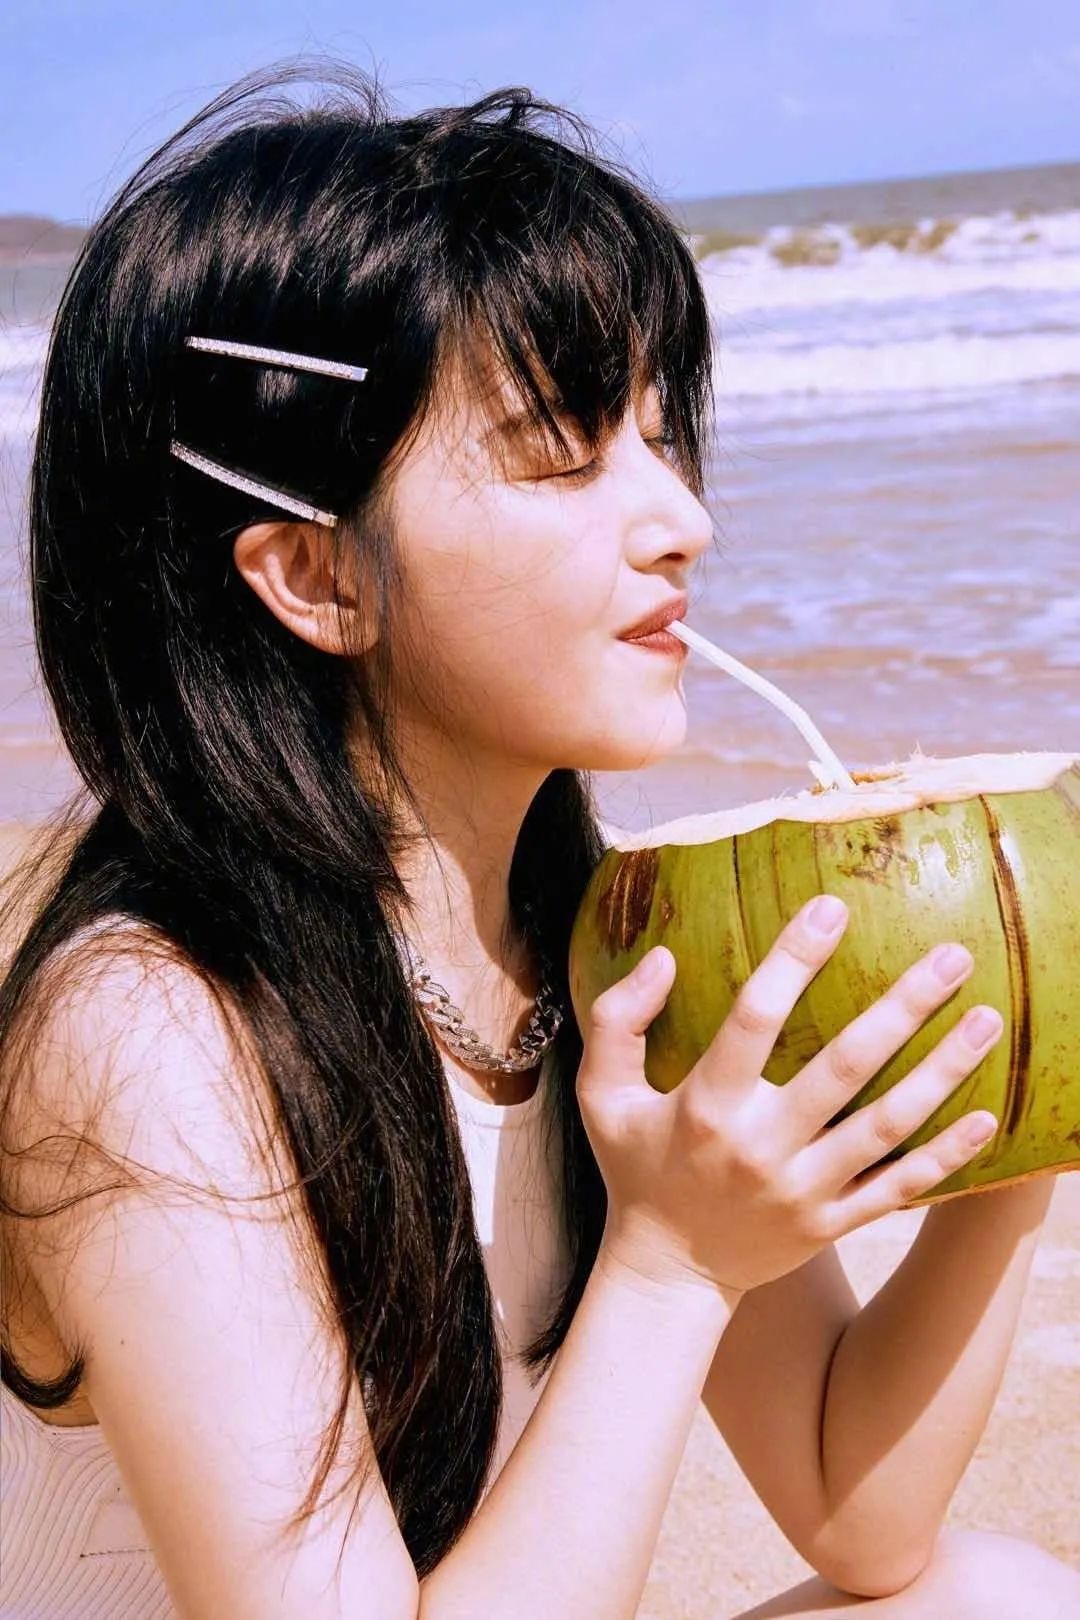 镜头里的清子在沙滩上喝着椰汁,吹着海风,莞尔一笑